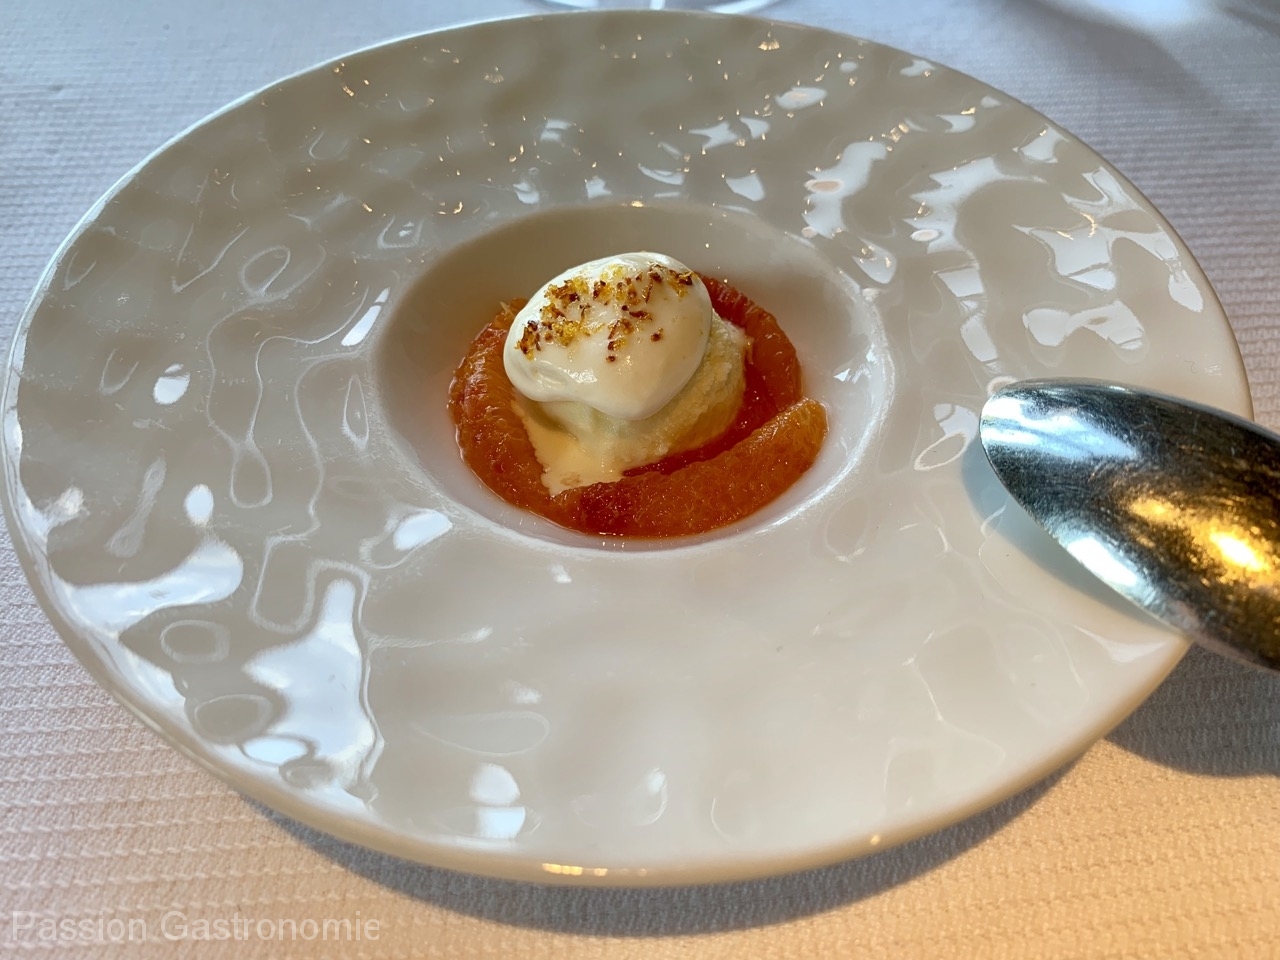 Restaurant Guy Savoy - Pré-dessert : suprême d’orange sanguine, sorbet safran